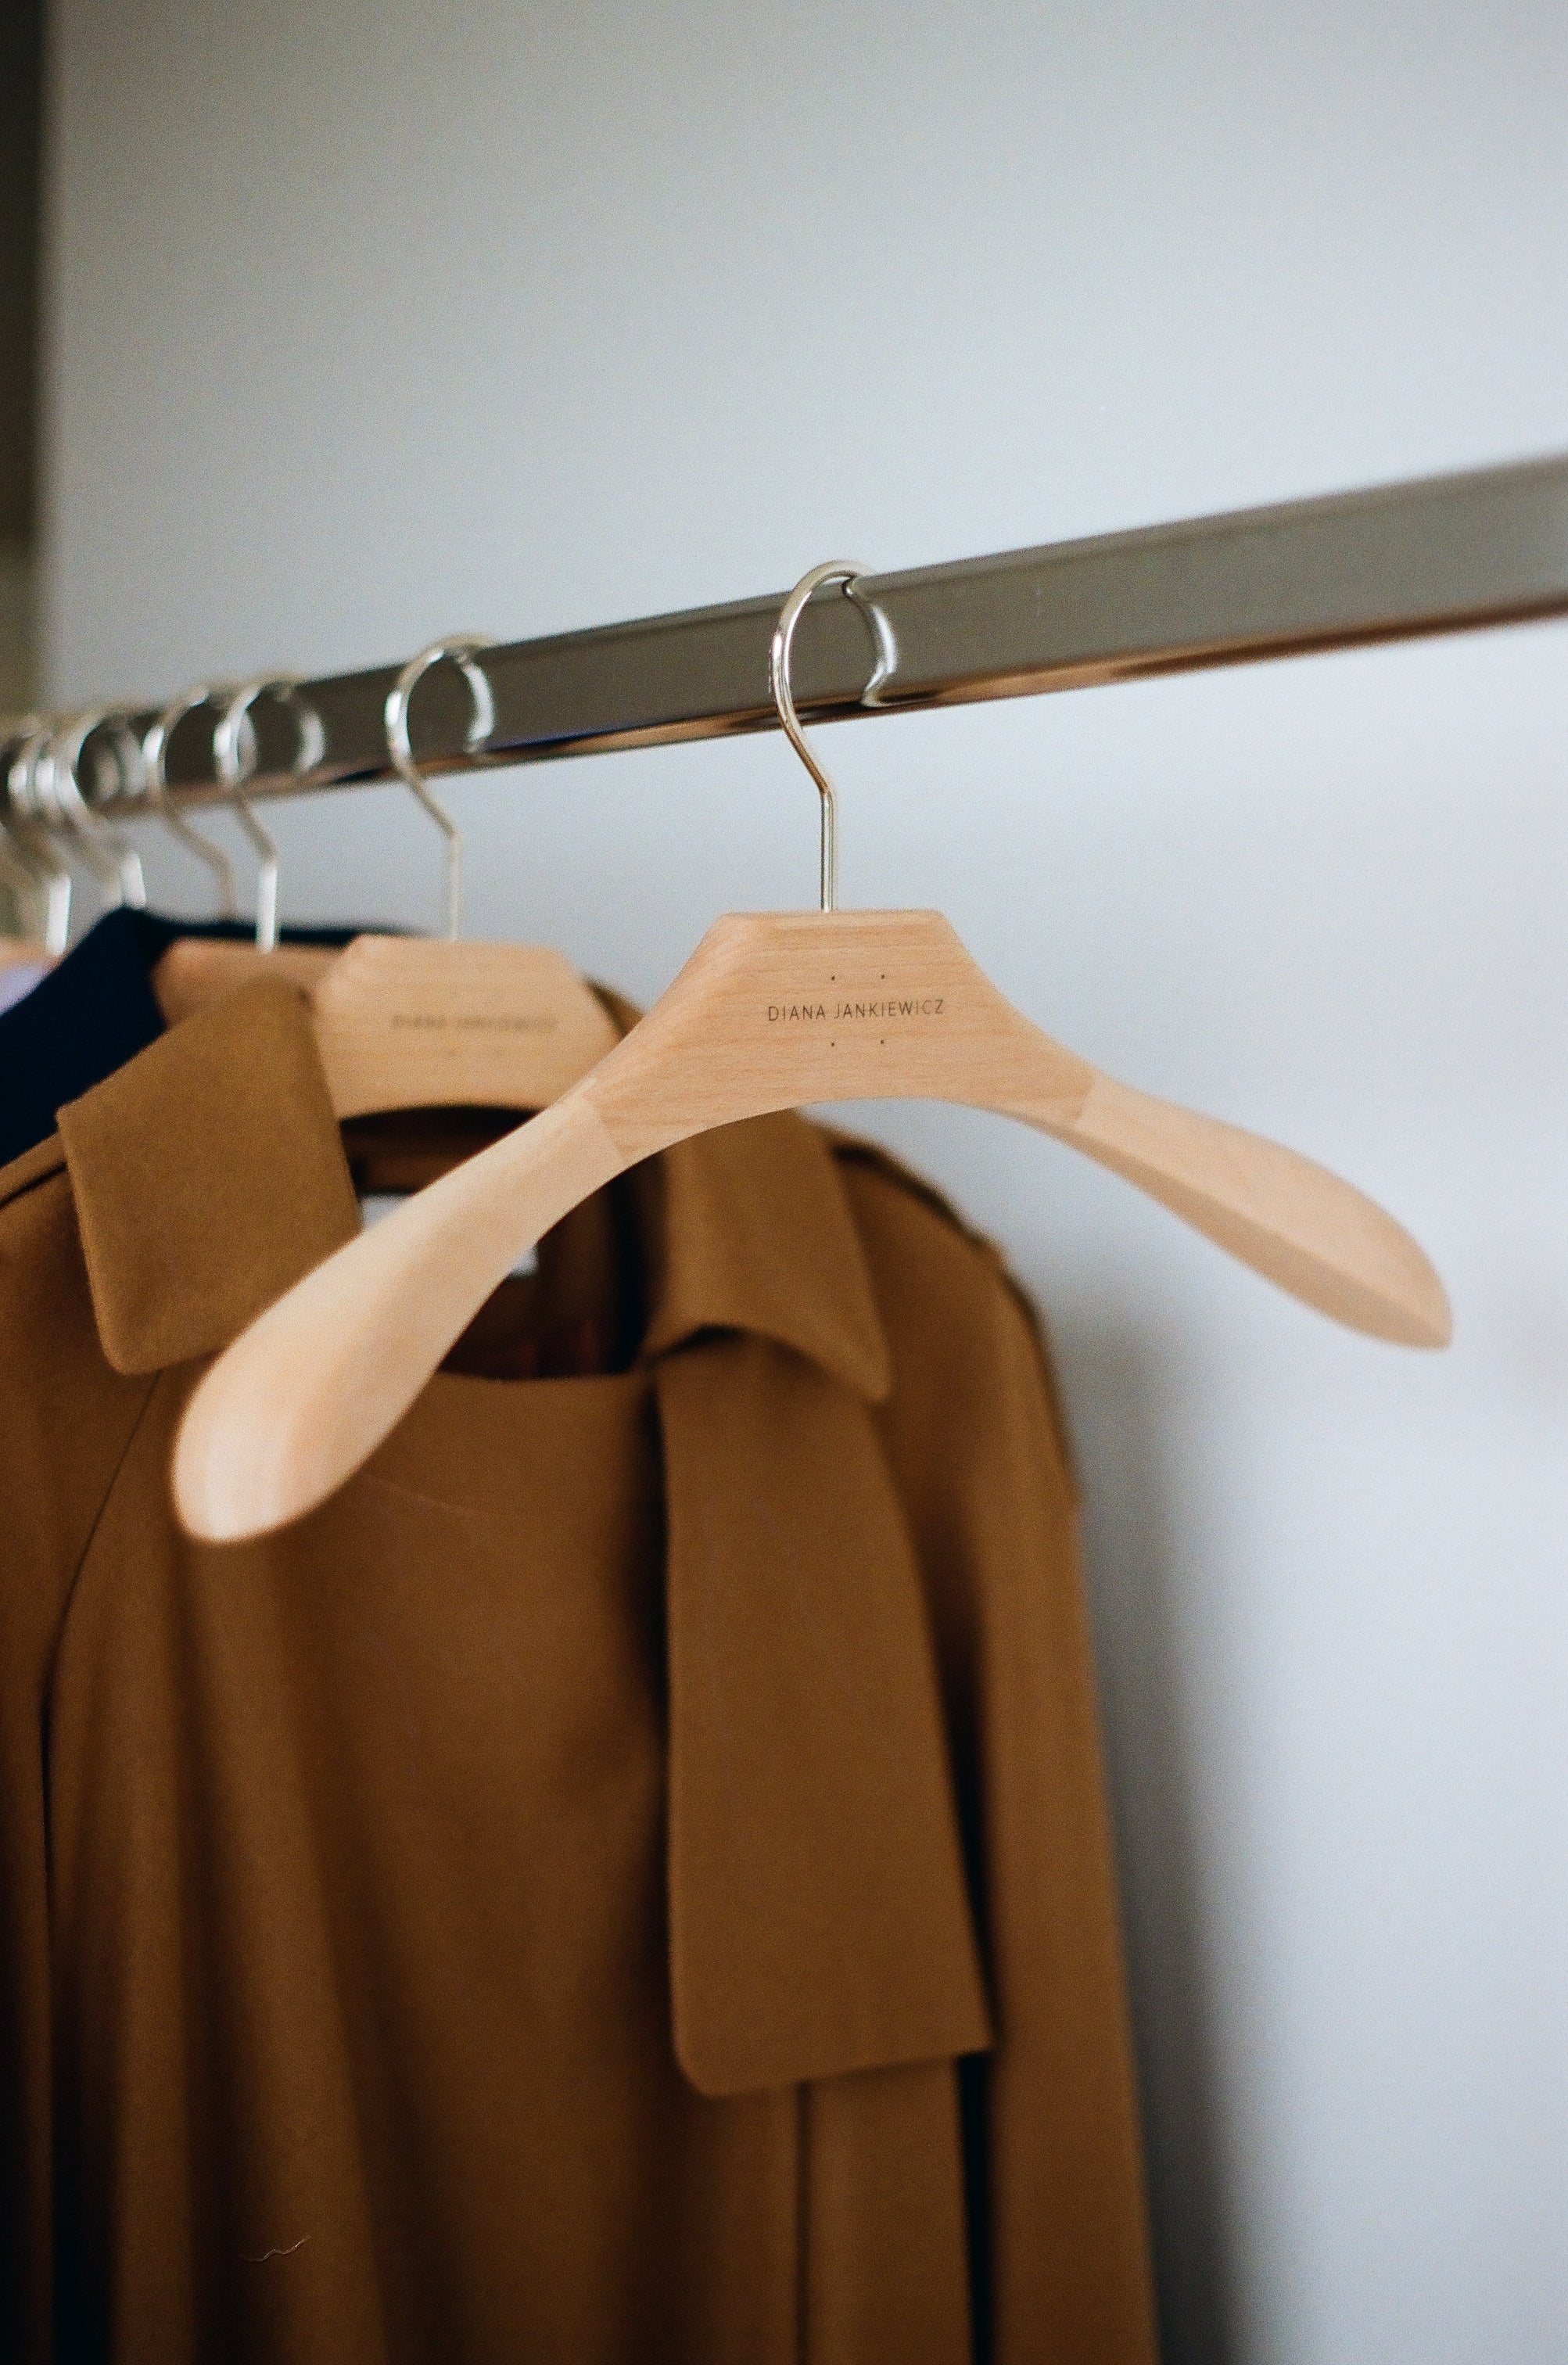 Portabito coat hanger